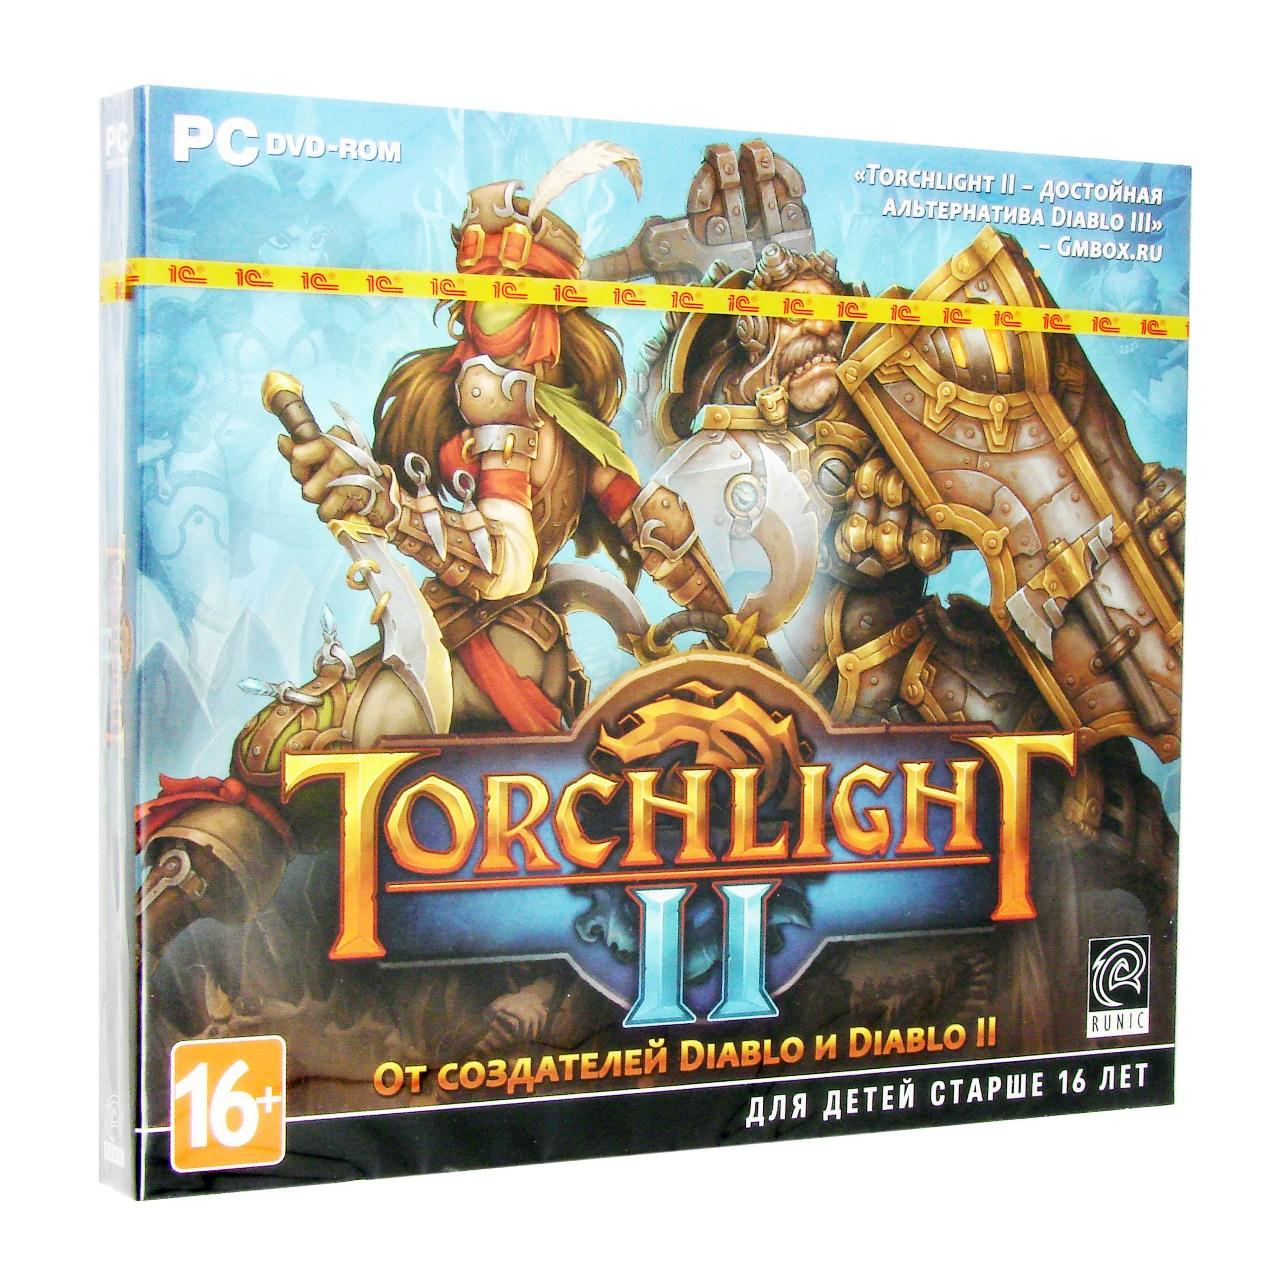  - Torchlight 2 (PC),  "1-", 1DVD